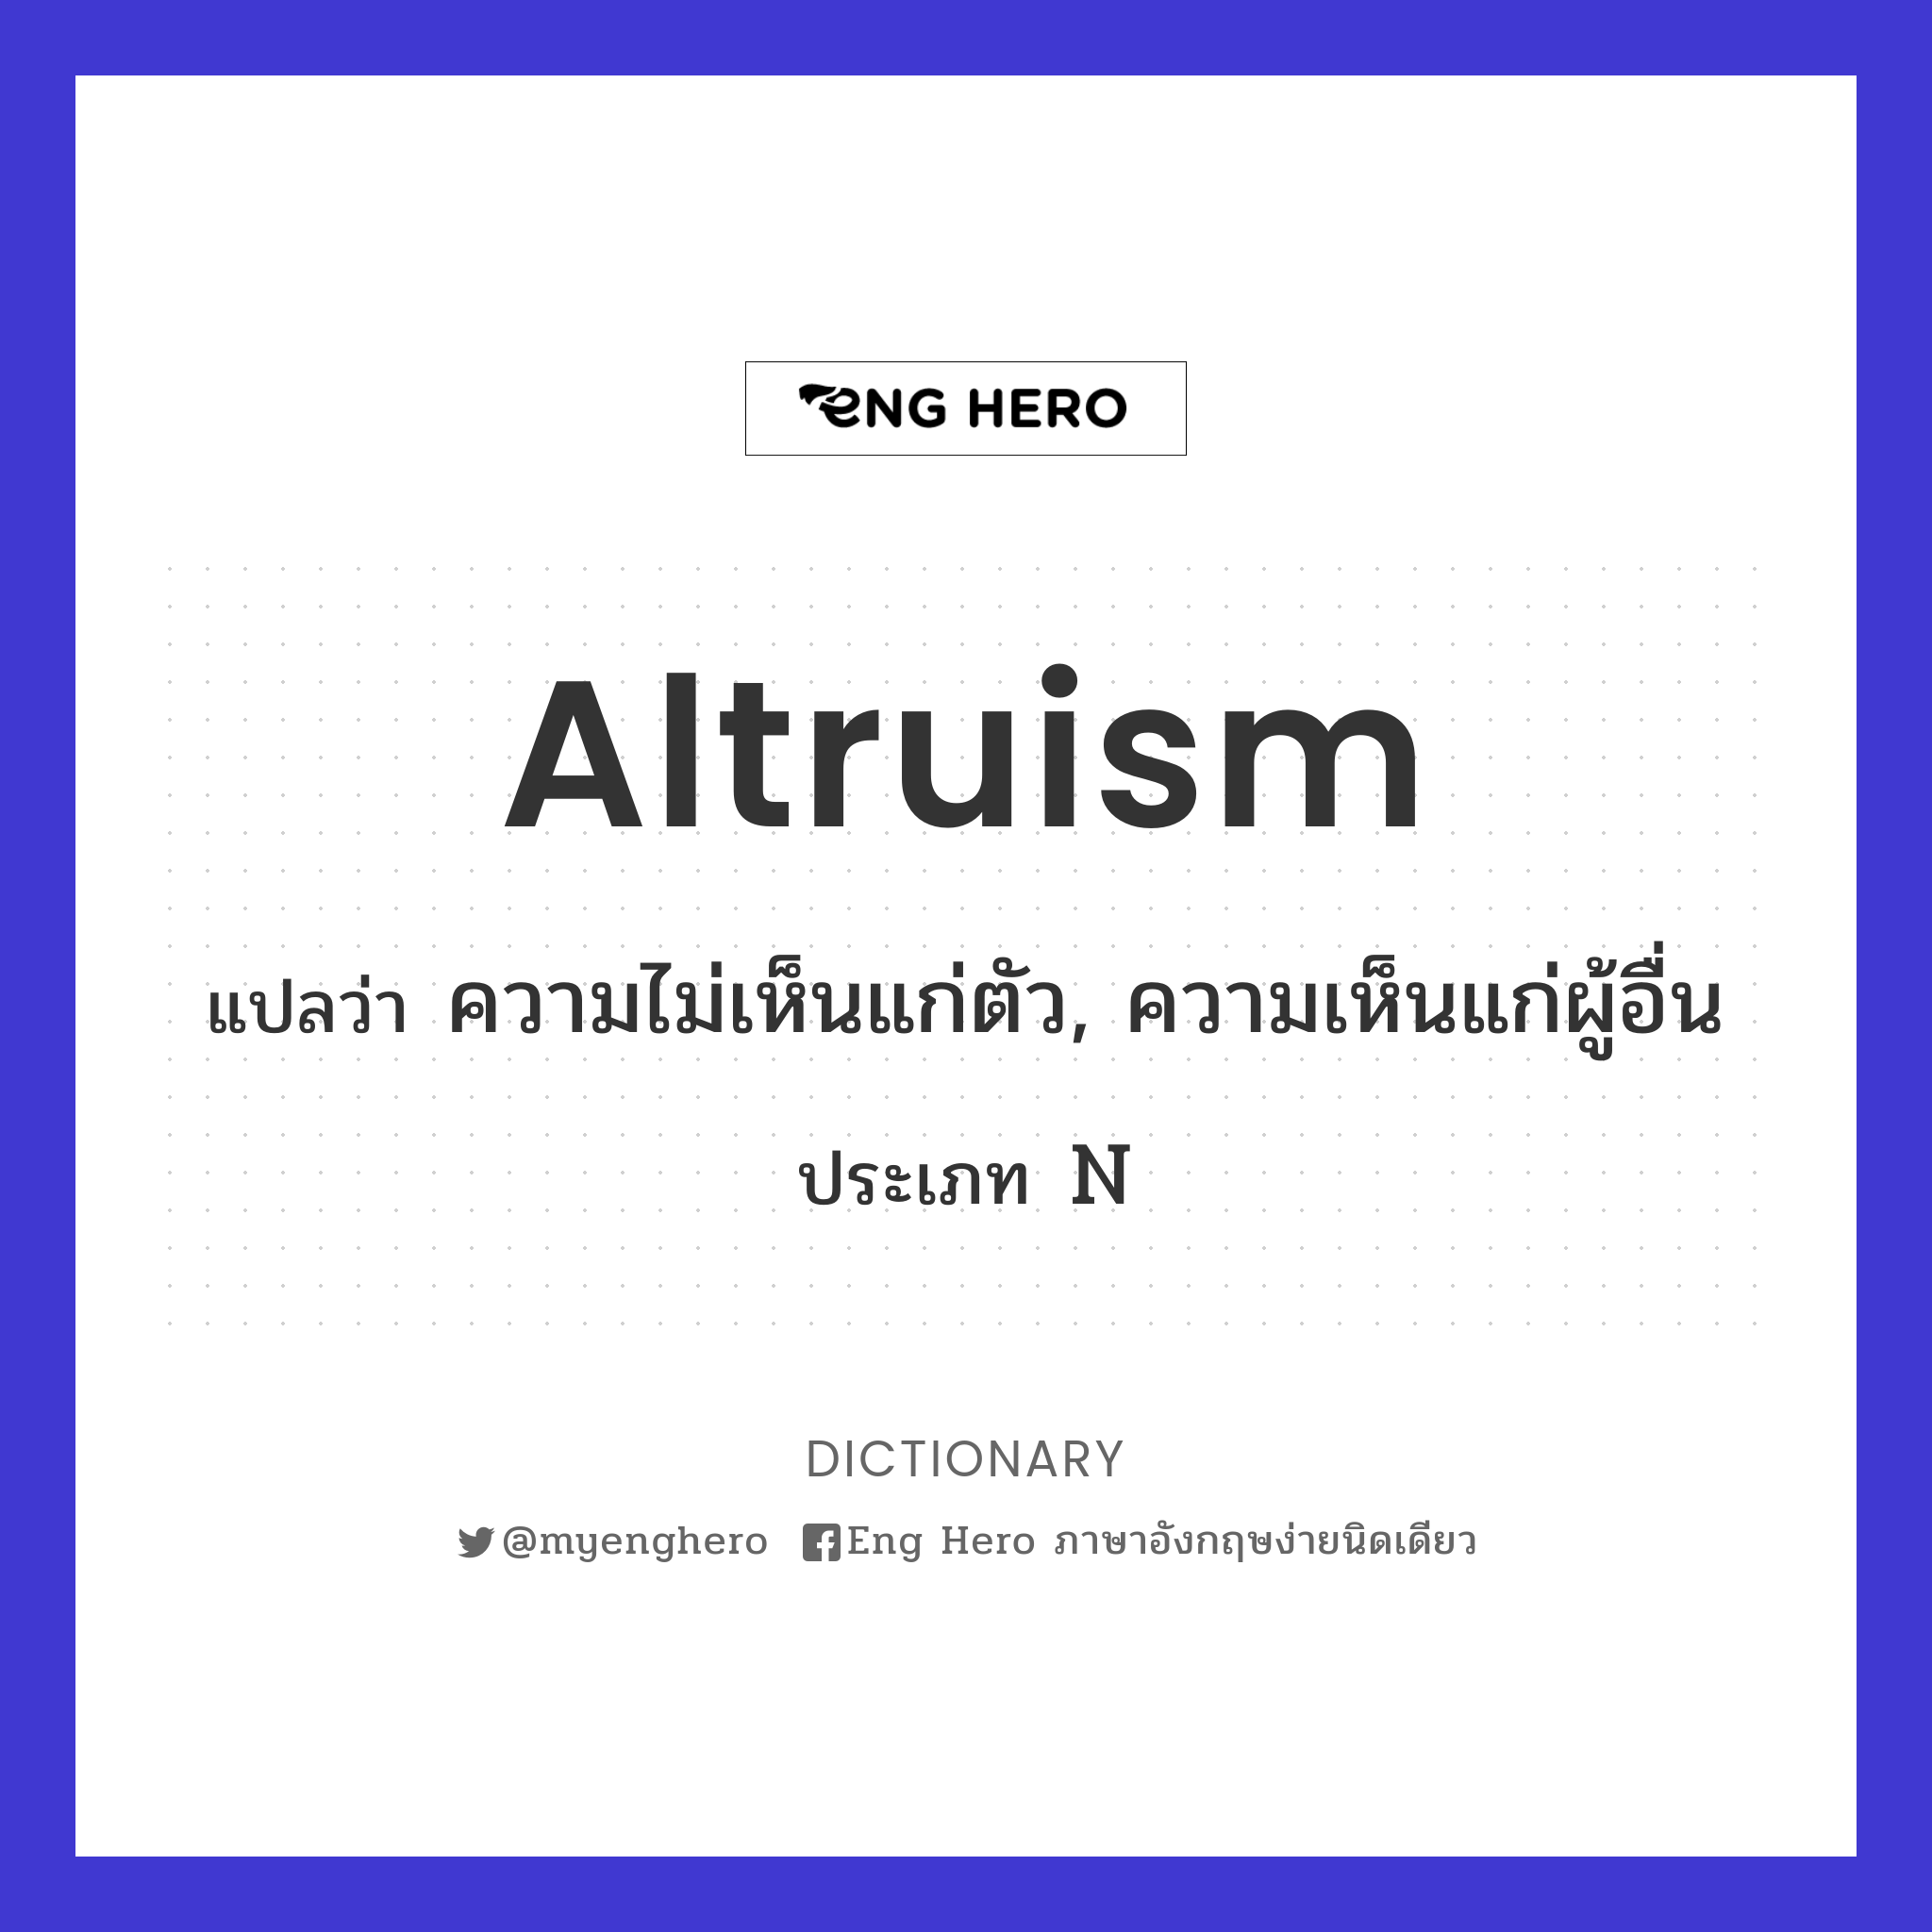 altruism